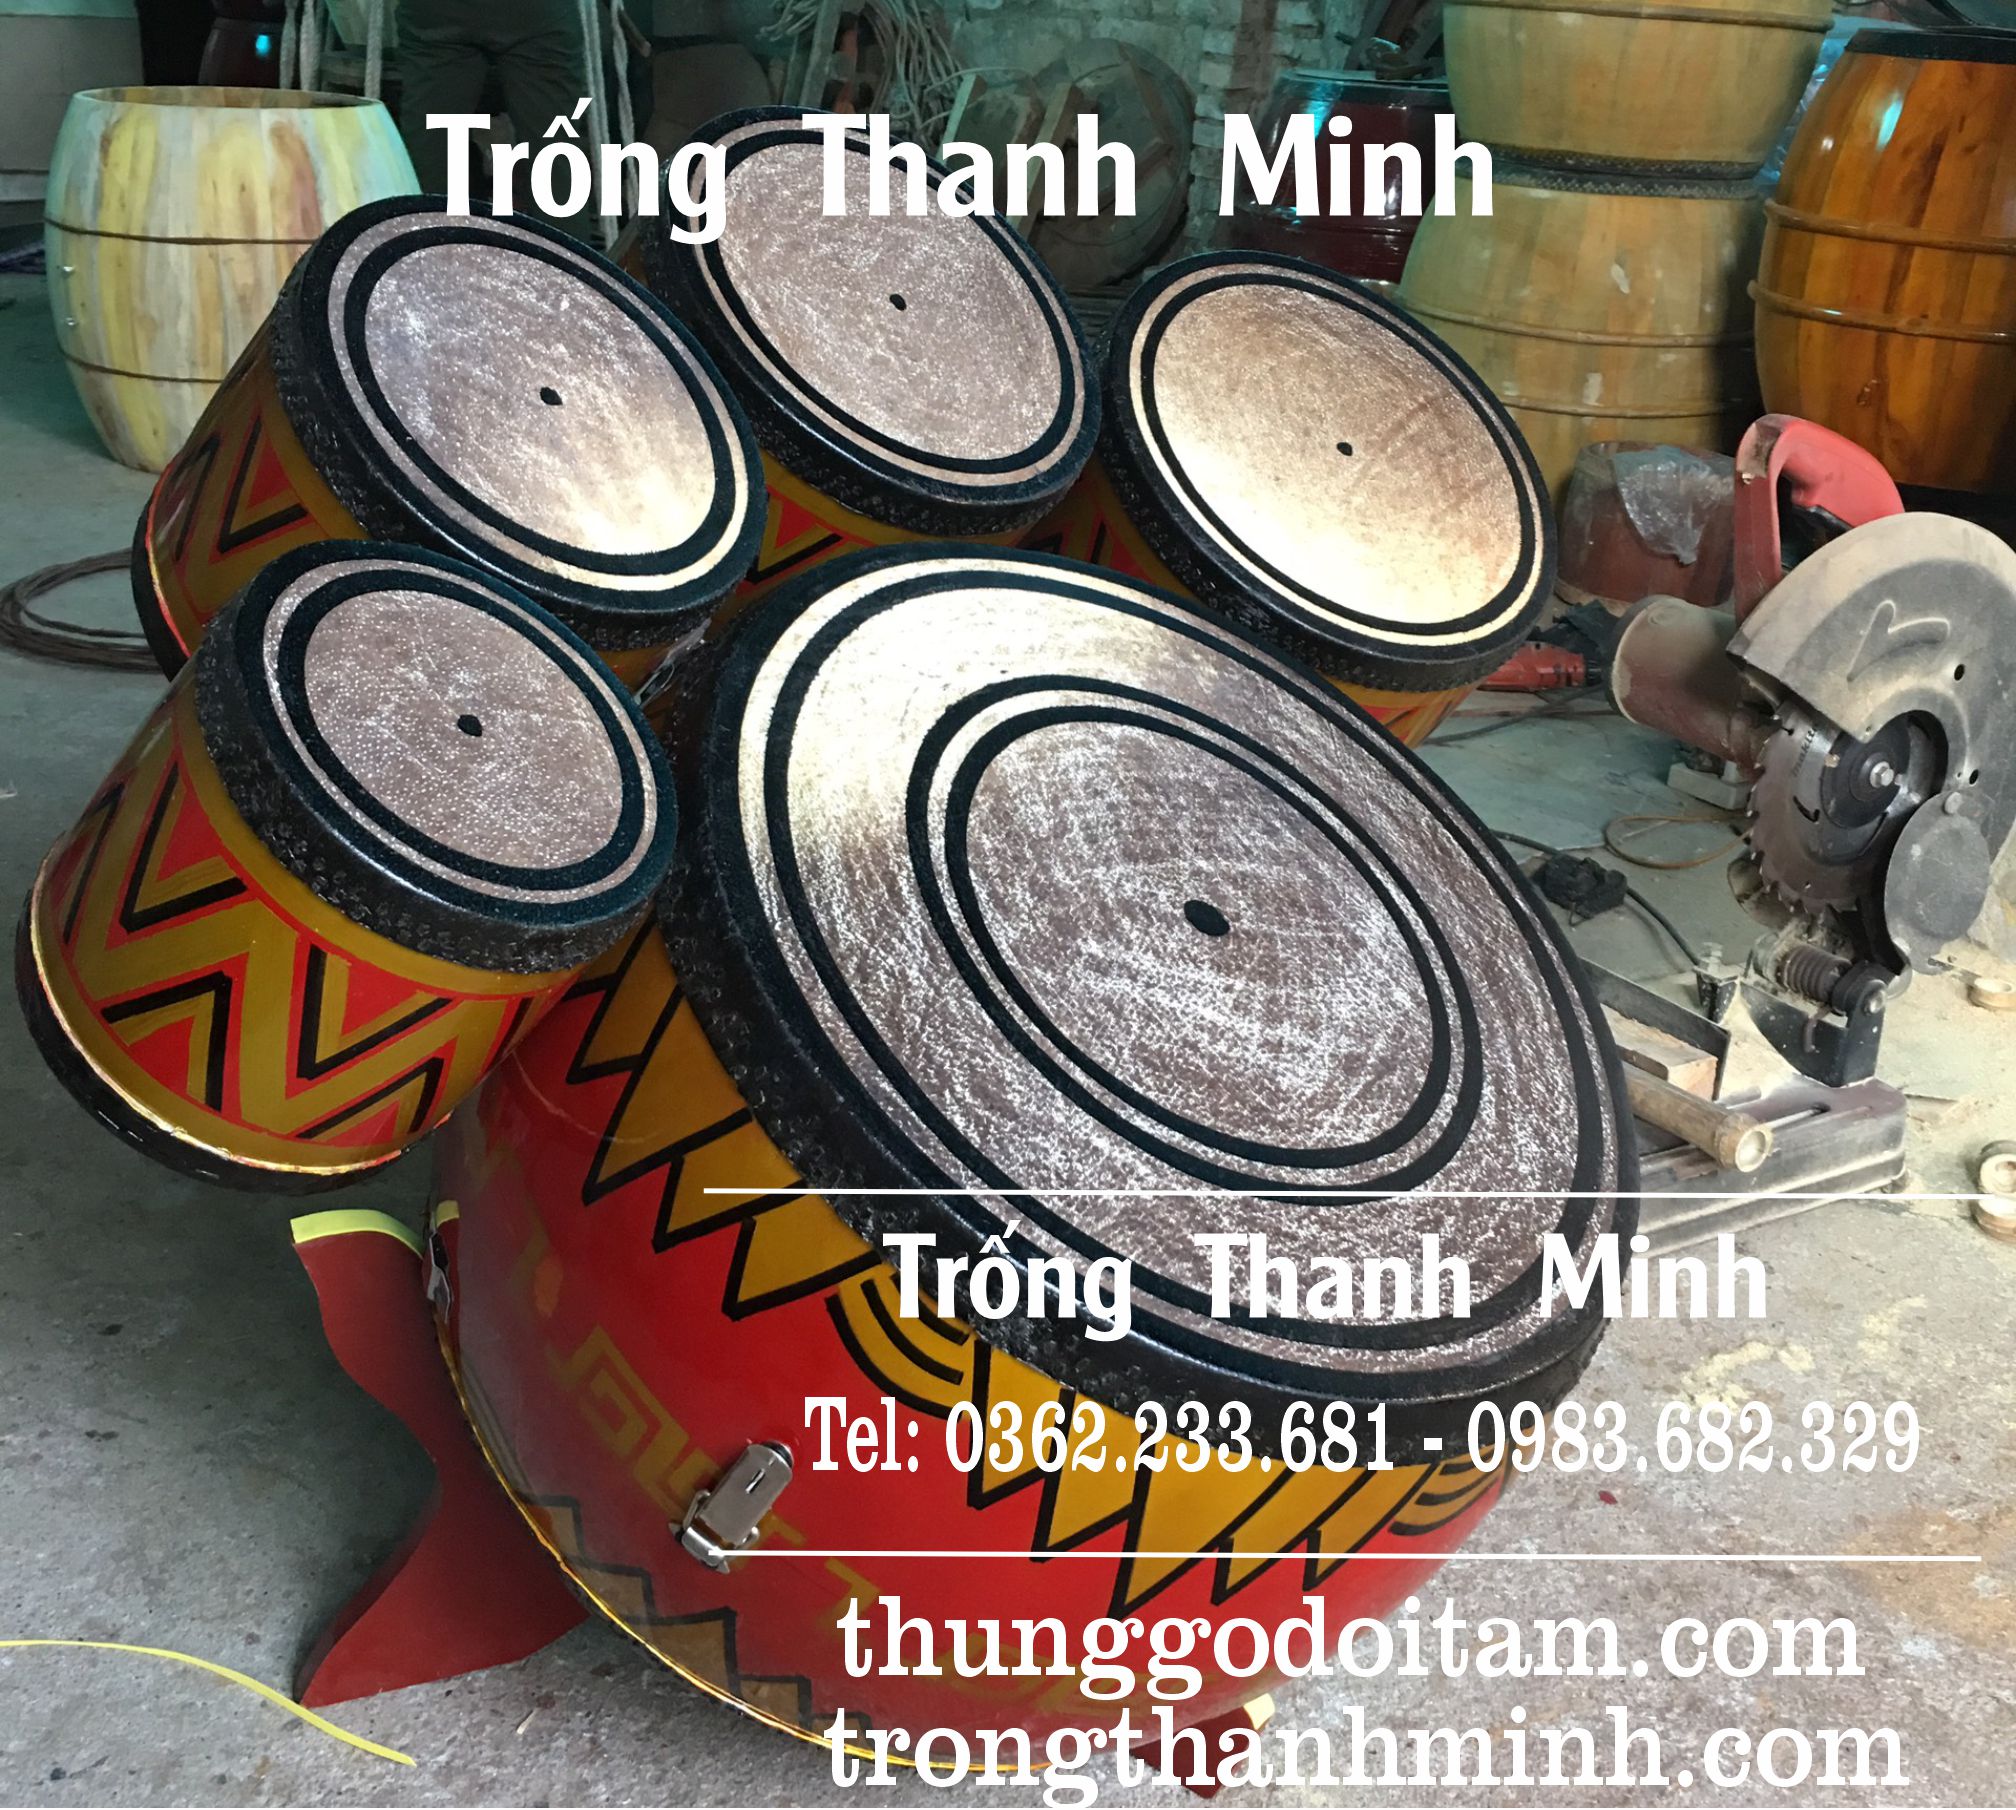 Sản xuất trống dàn hát văn âm chuẩn tại xưởng Trống Thanh Minh - số 1 về chất lượng.